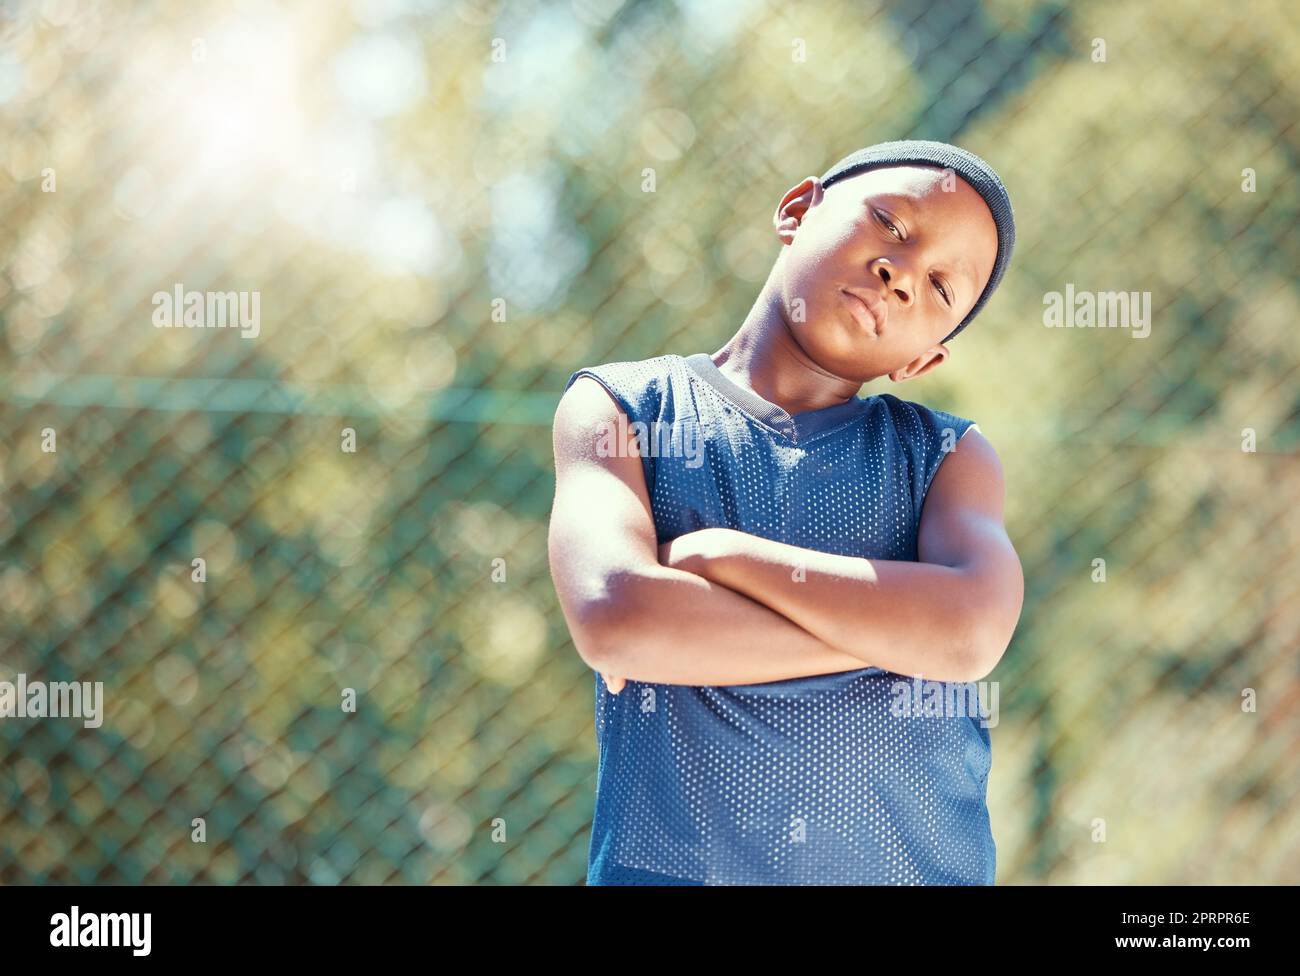 Kind, Basketball und eine ernsthafte Einstellung mit einem schwarzen Jungen, der mit verschränkten Armen steht und bereit ist, draußen zu spielen. Stolzes, selbstbewusstes und cooles Kind, das auf der Straße herumläuft und bereit ist, sich gegen Mobbing zu wehren Stockfoto